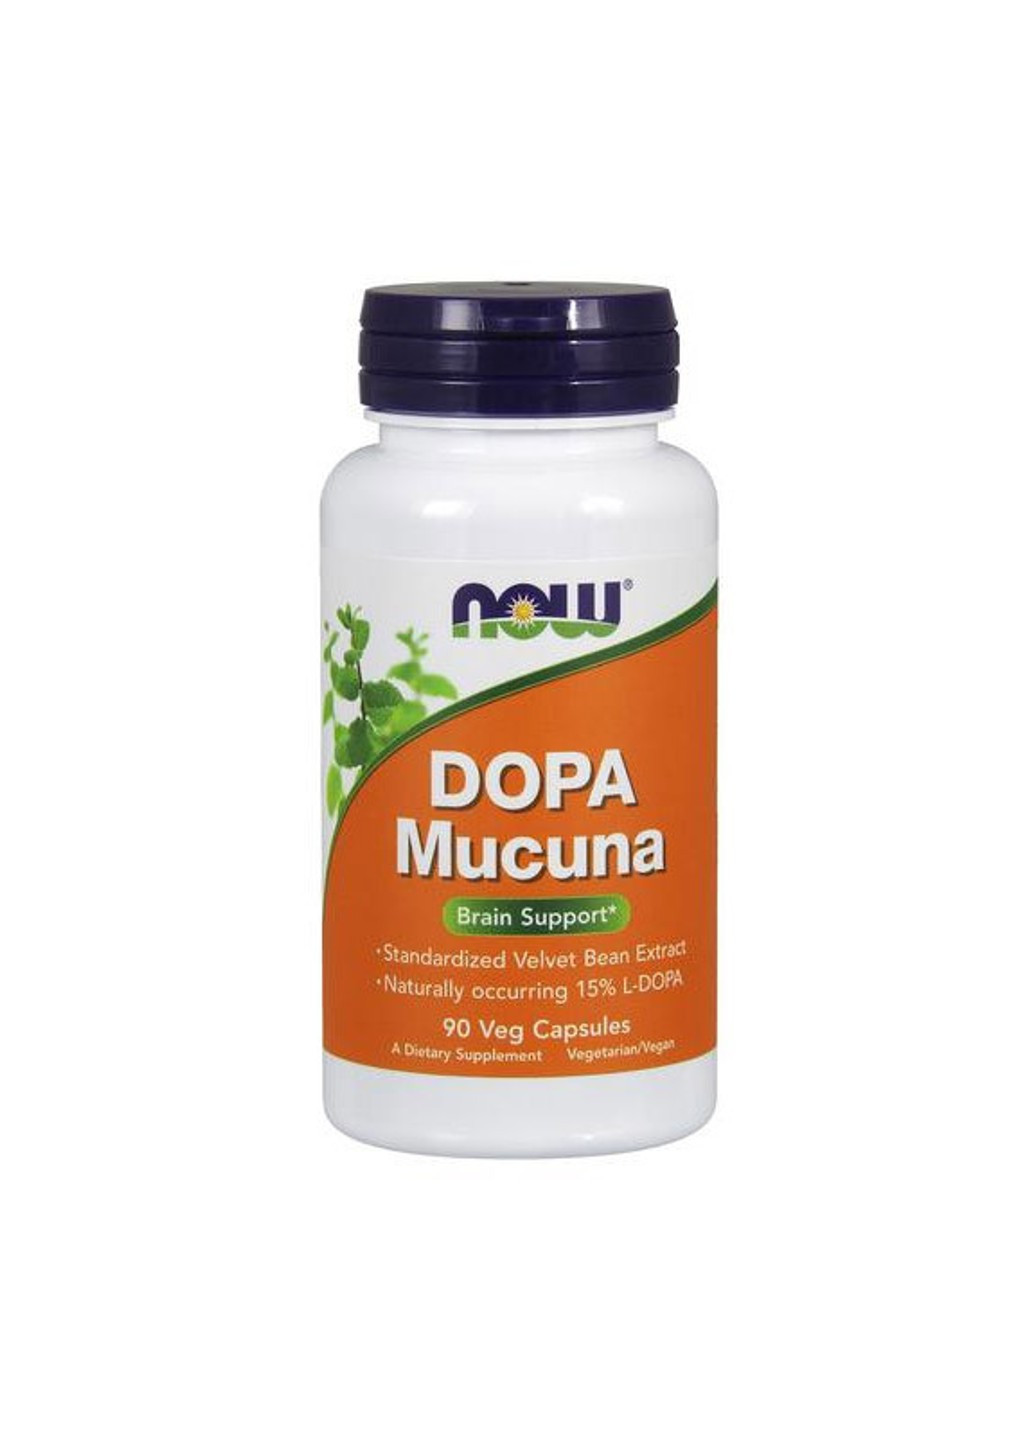 Допа мукуна жгучая DOPA Mucuna (90 капс) нау фудс Now Foods (255408199)